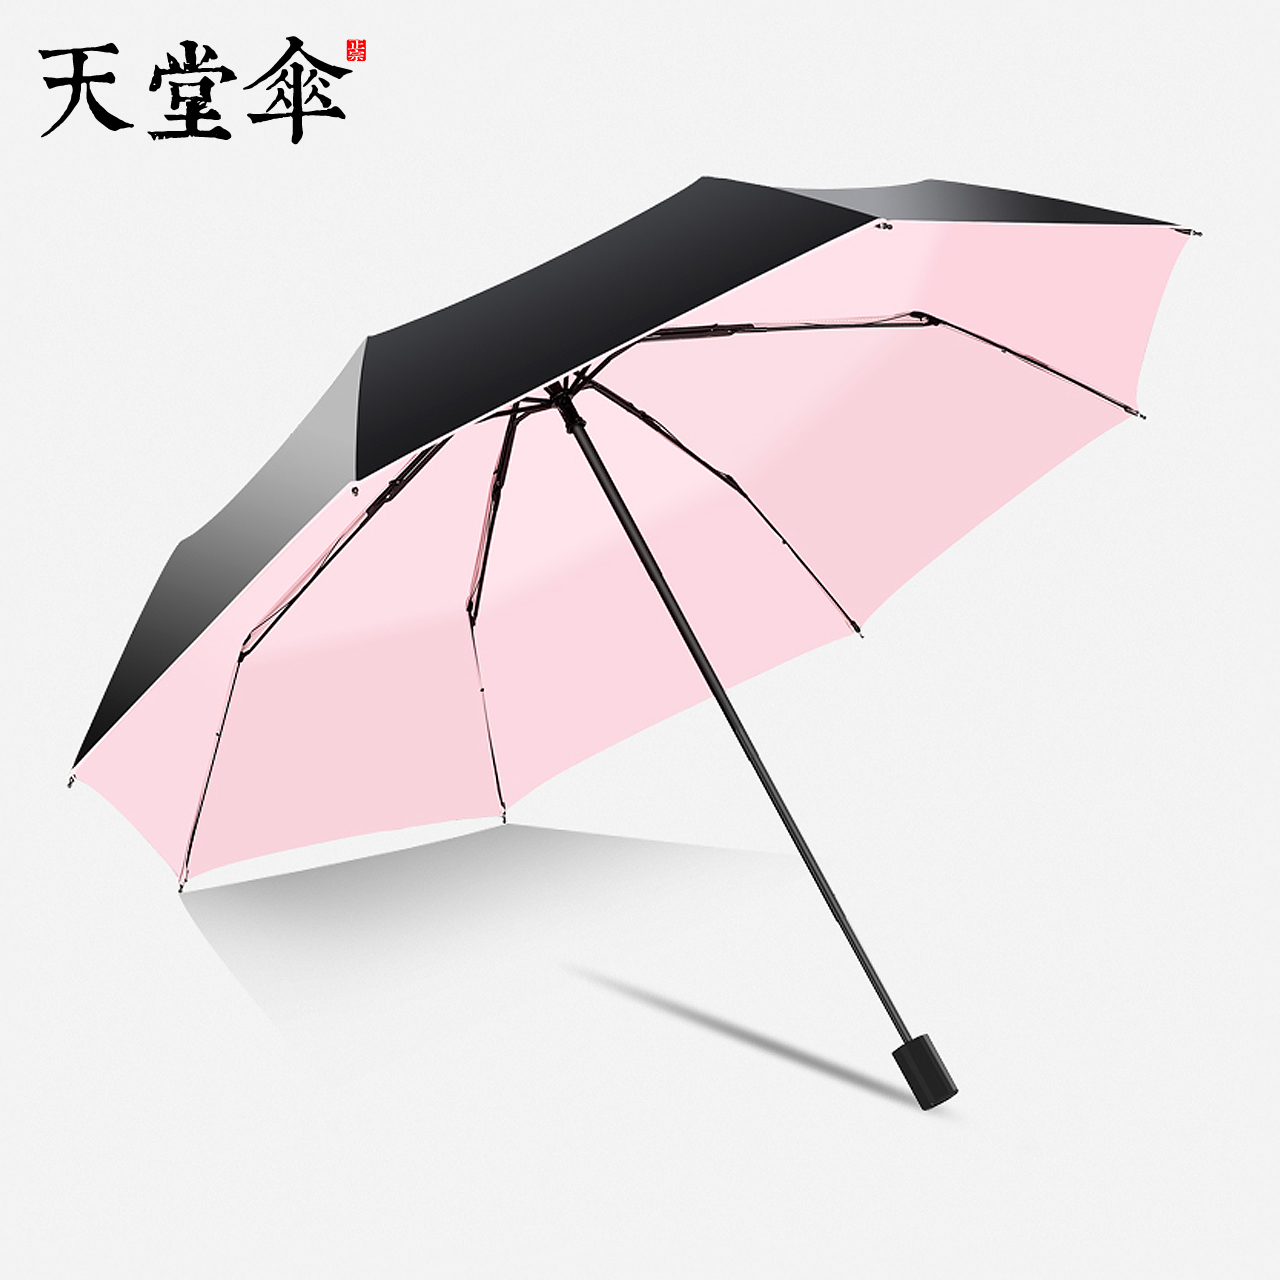 Зонтик надо. Флиораж зонты. Модные зонты. Зонт стильный складной. Модный зонтик женский.